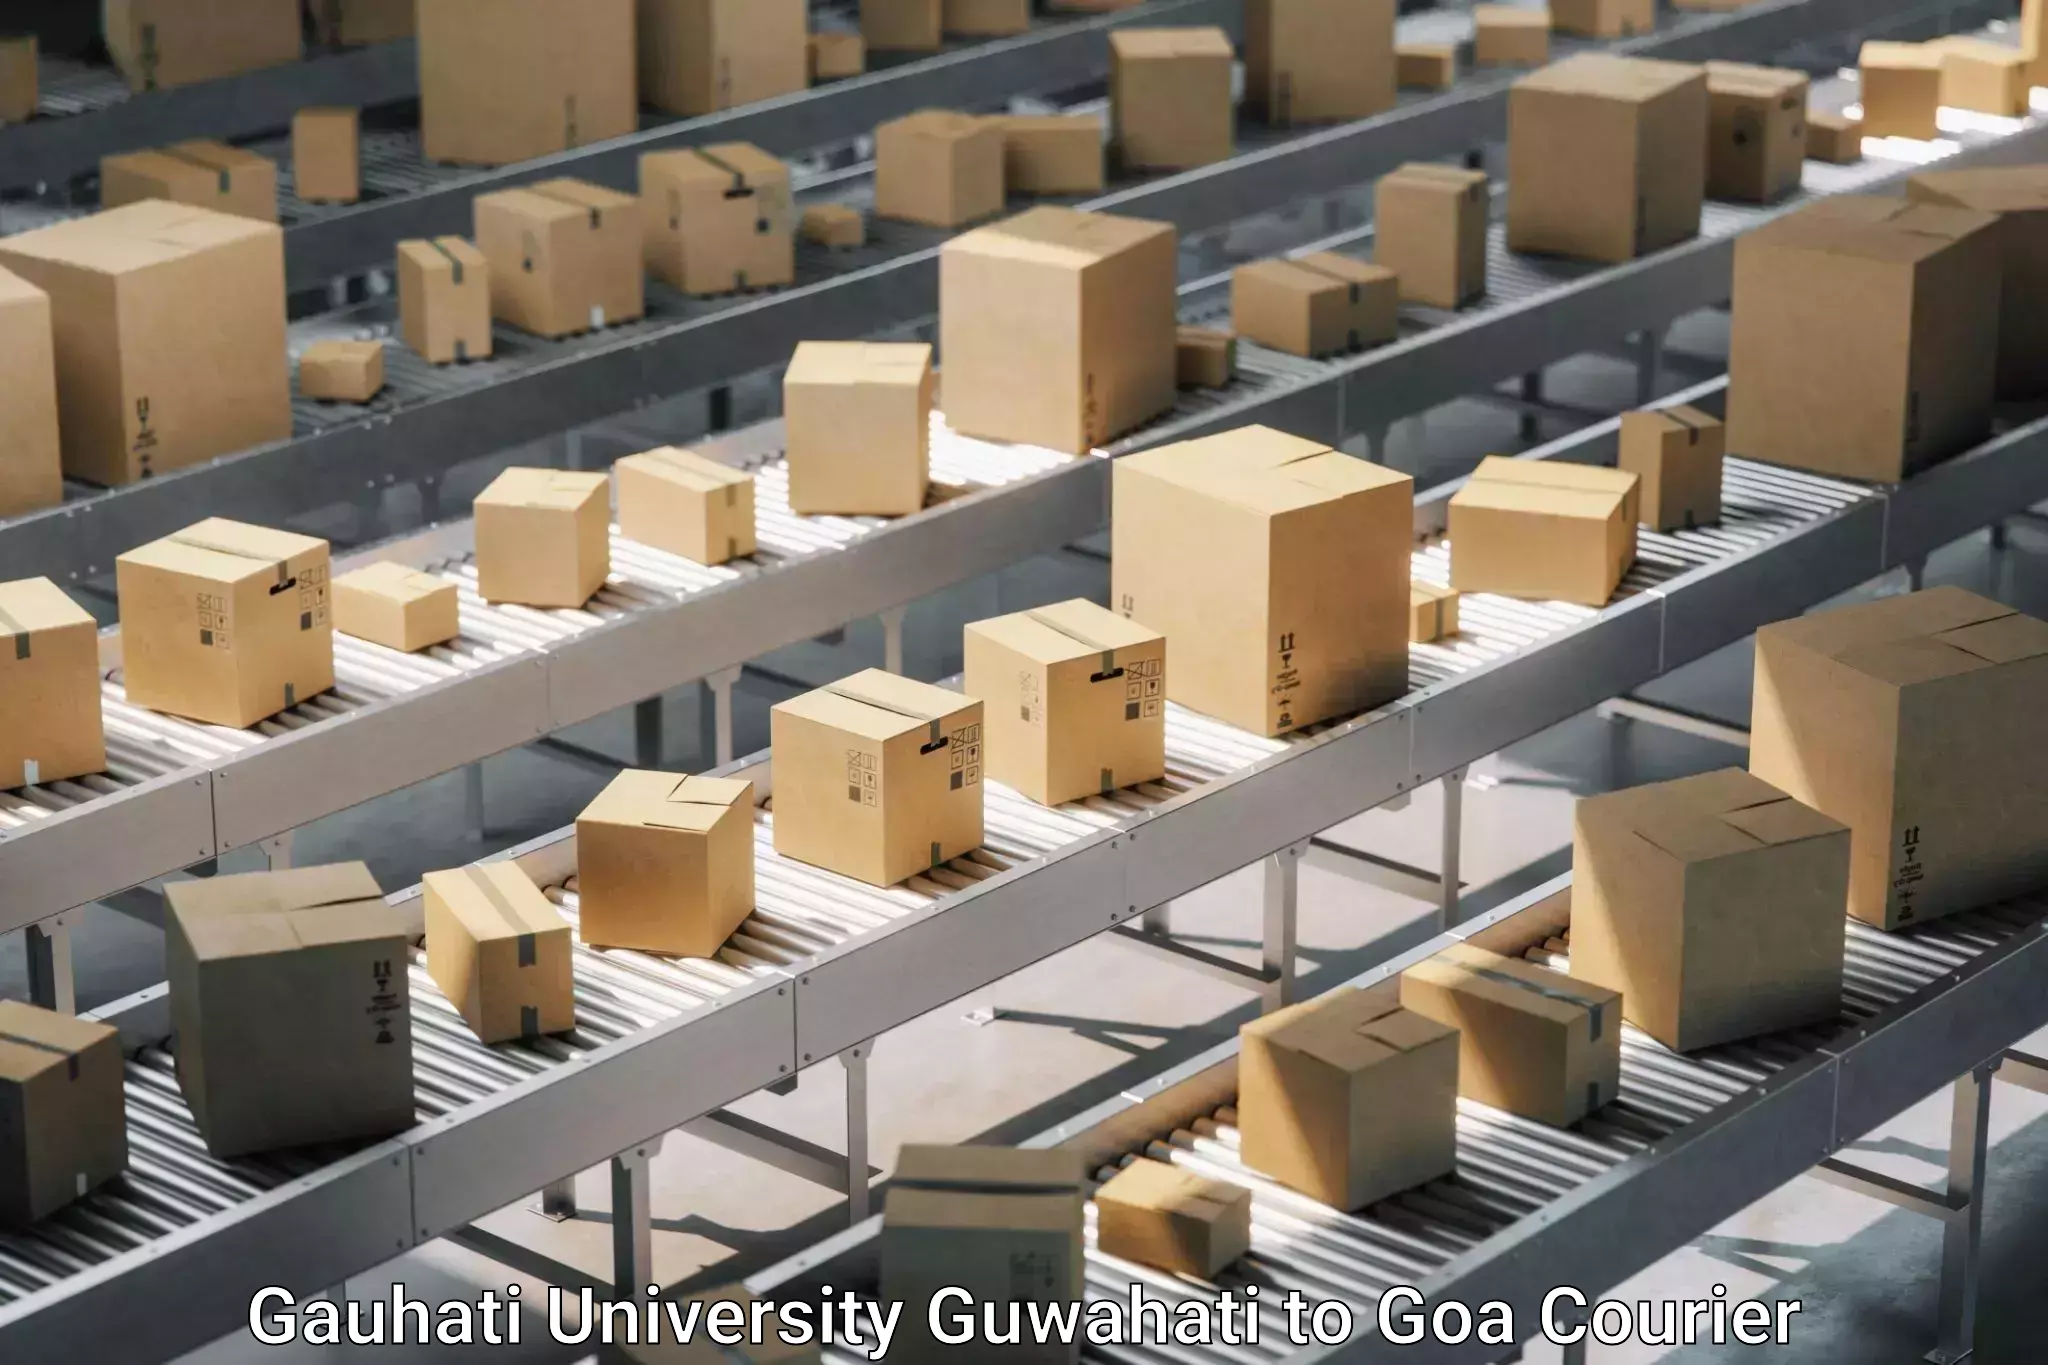 Specialized moving company Gauhati University Guwahati to Margao